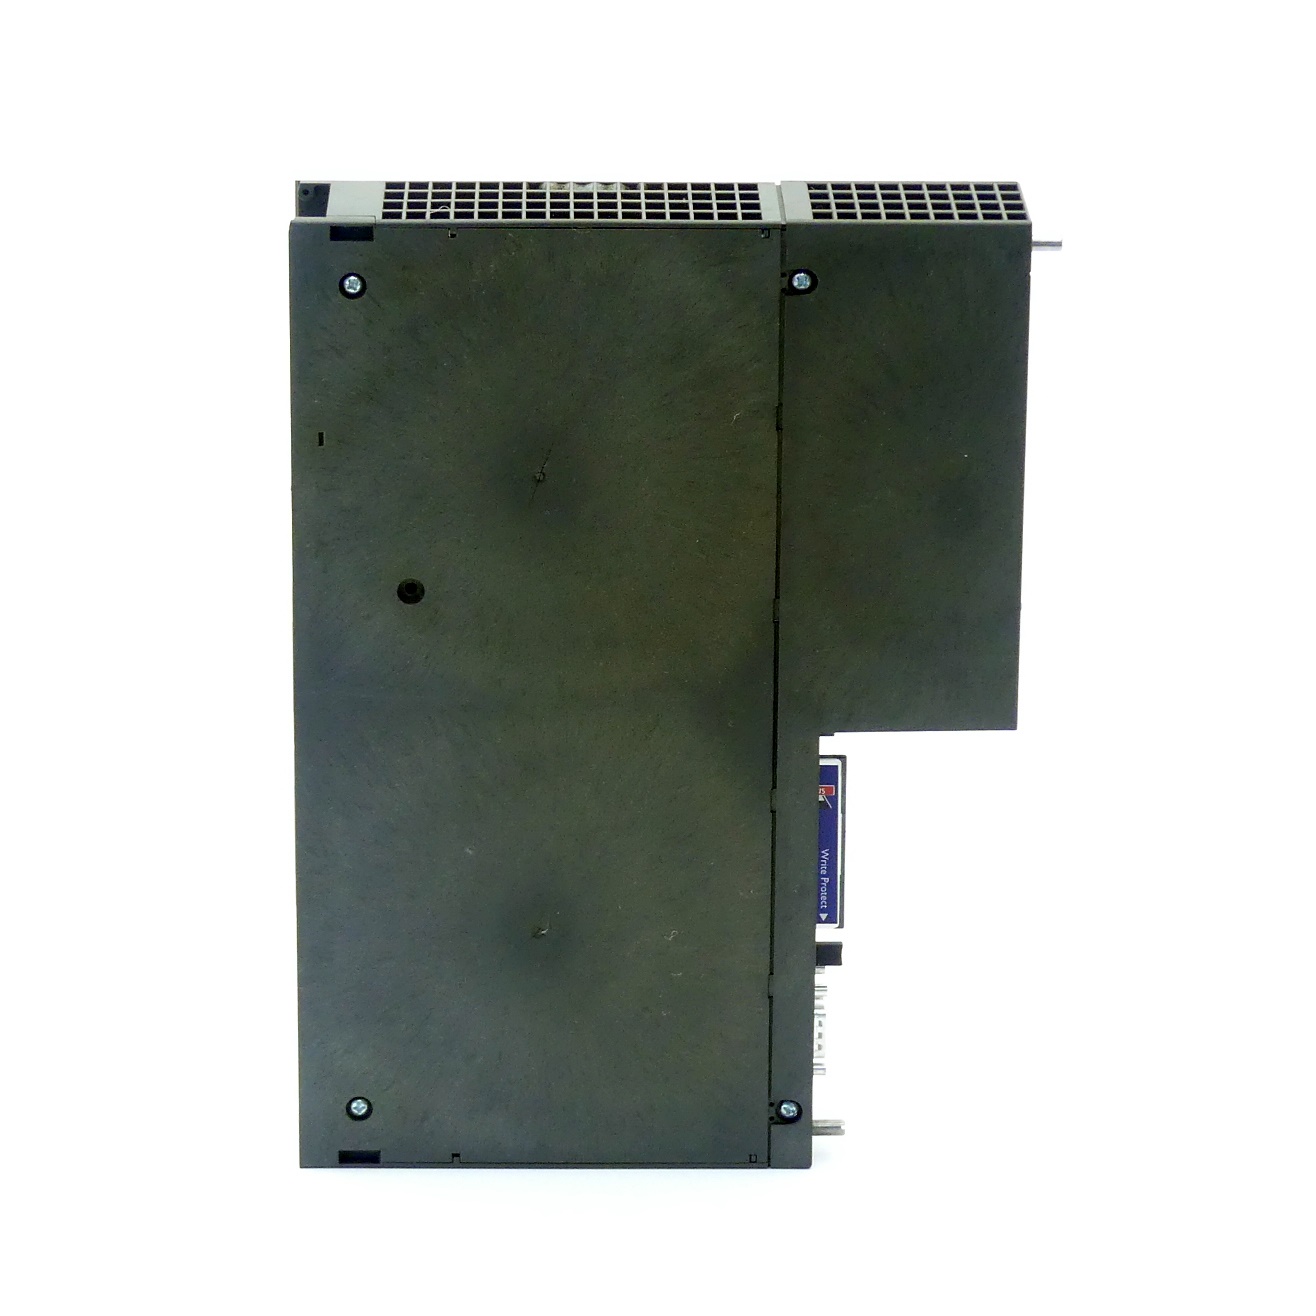 Controller board IBS S7 400 DSC/I-T 